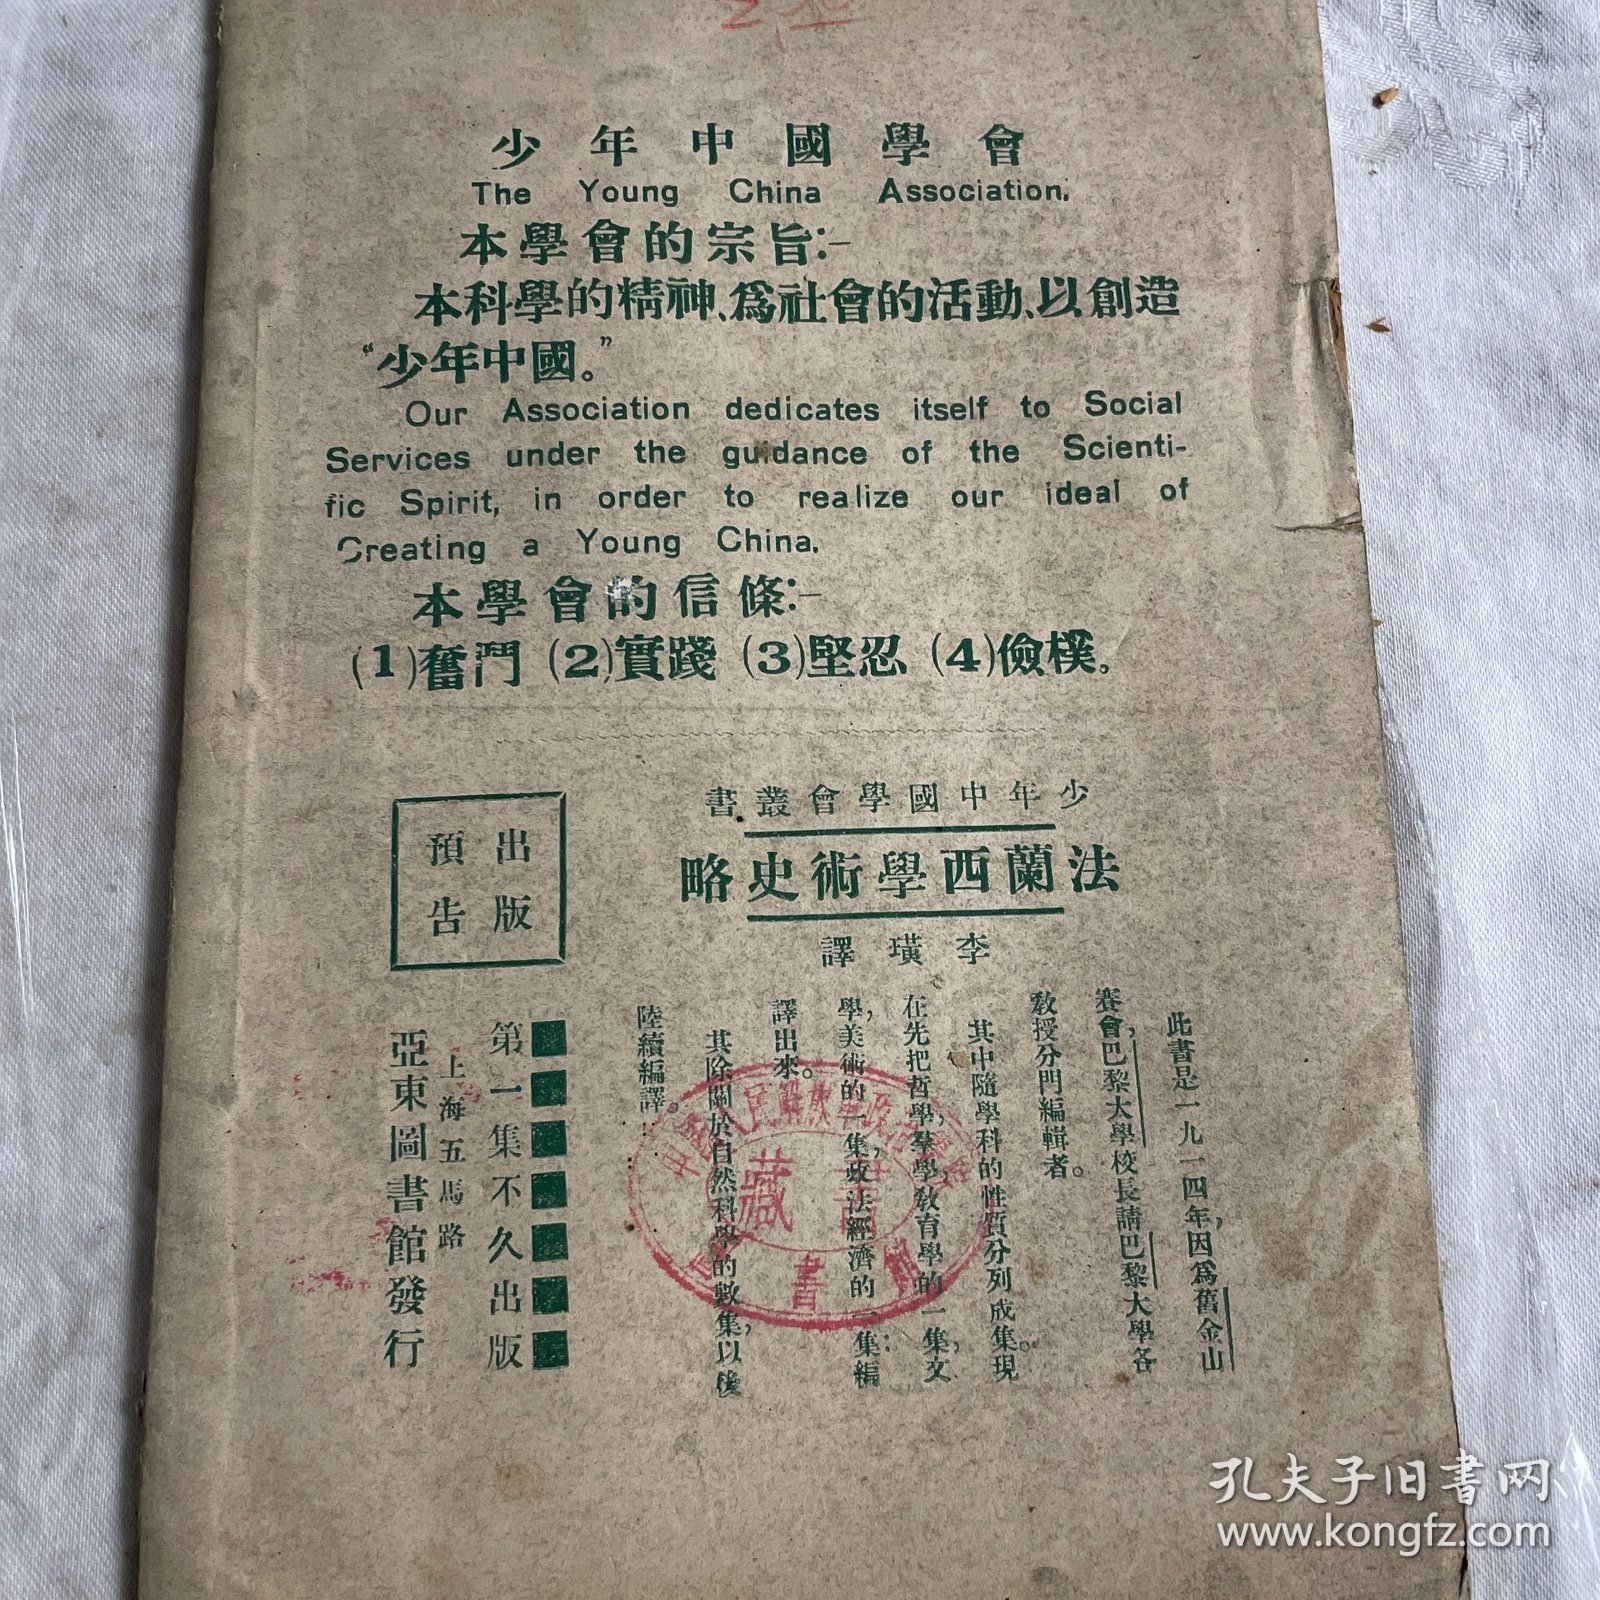 少年中国（第二卷第十期）内有本会版权之印